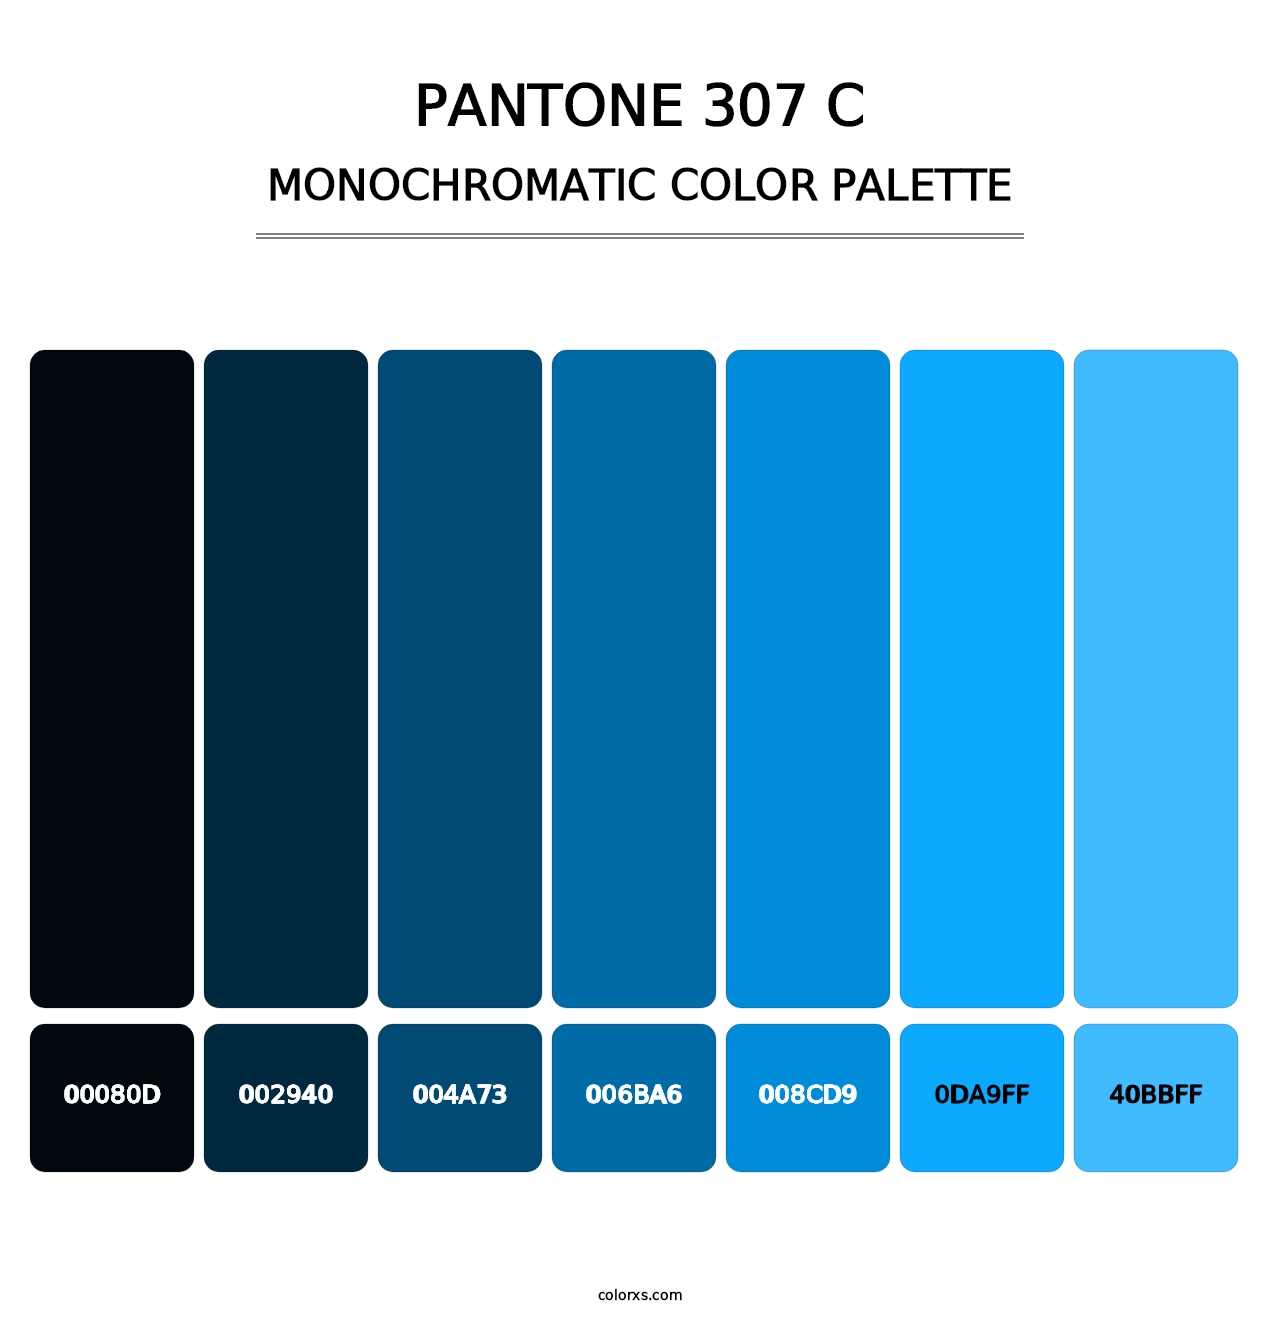 PANTONE 307 C - Monochromatic Color Palette